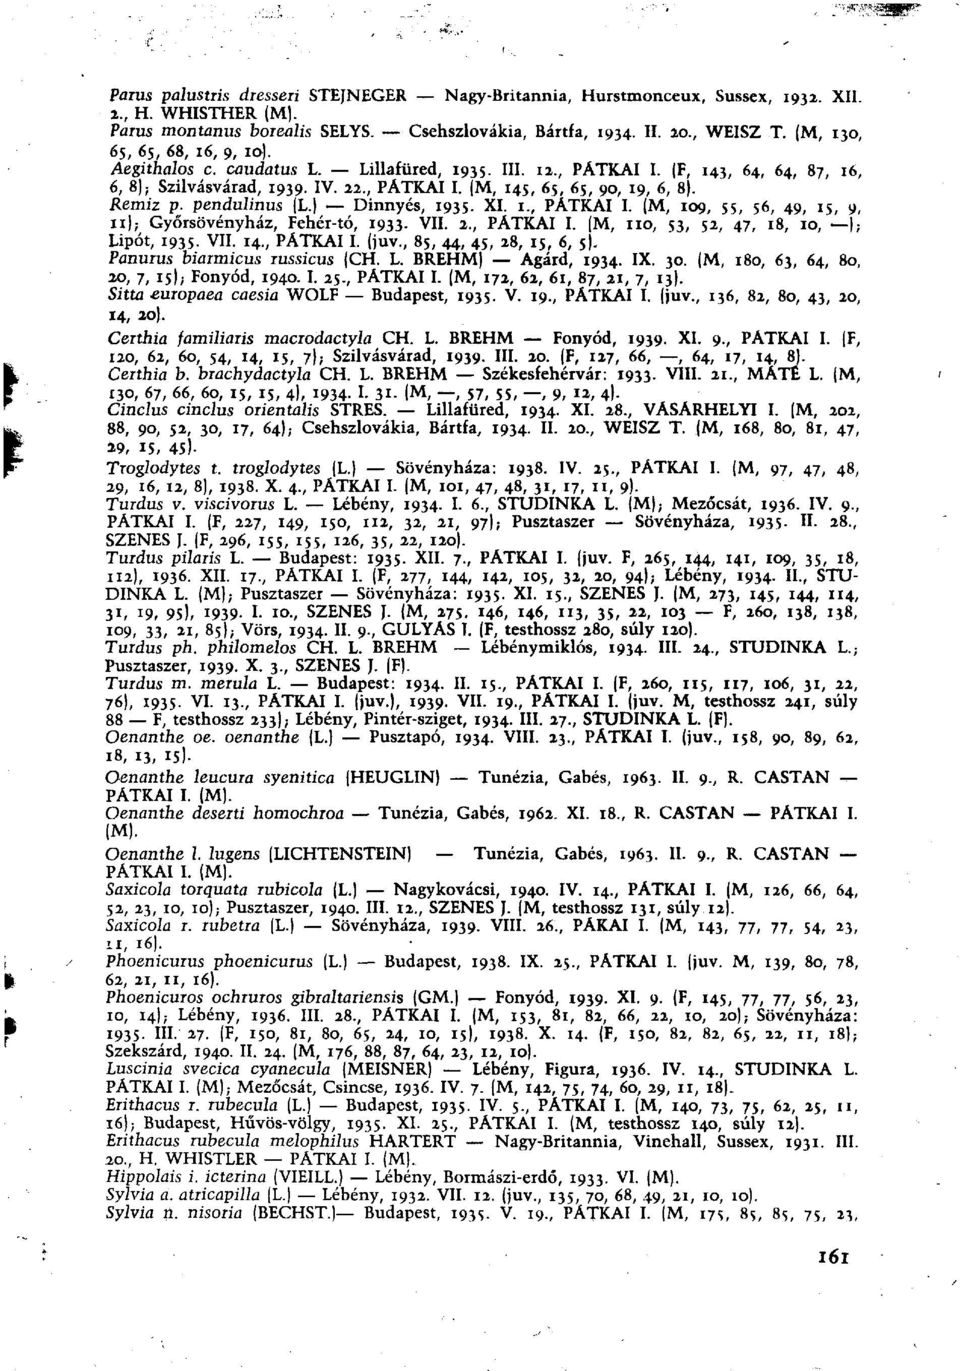 Remiz p. pendulinus (L.) Dinnyés, 1935. XI. 1., PÁTKAI I. (M, 109, 55, 56, 49, is, 9, 11); Győrsövényház, Fehér-tó, 1933. VII. 2., PÁTKAI I. (M, no, 53, 52, 47, 18, 10, ) ; Lipót, 1935. VII. 14.